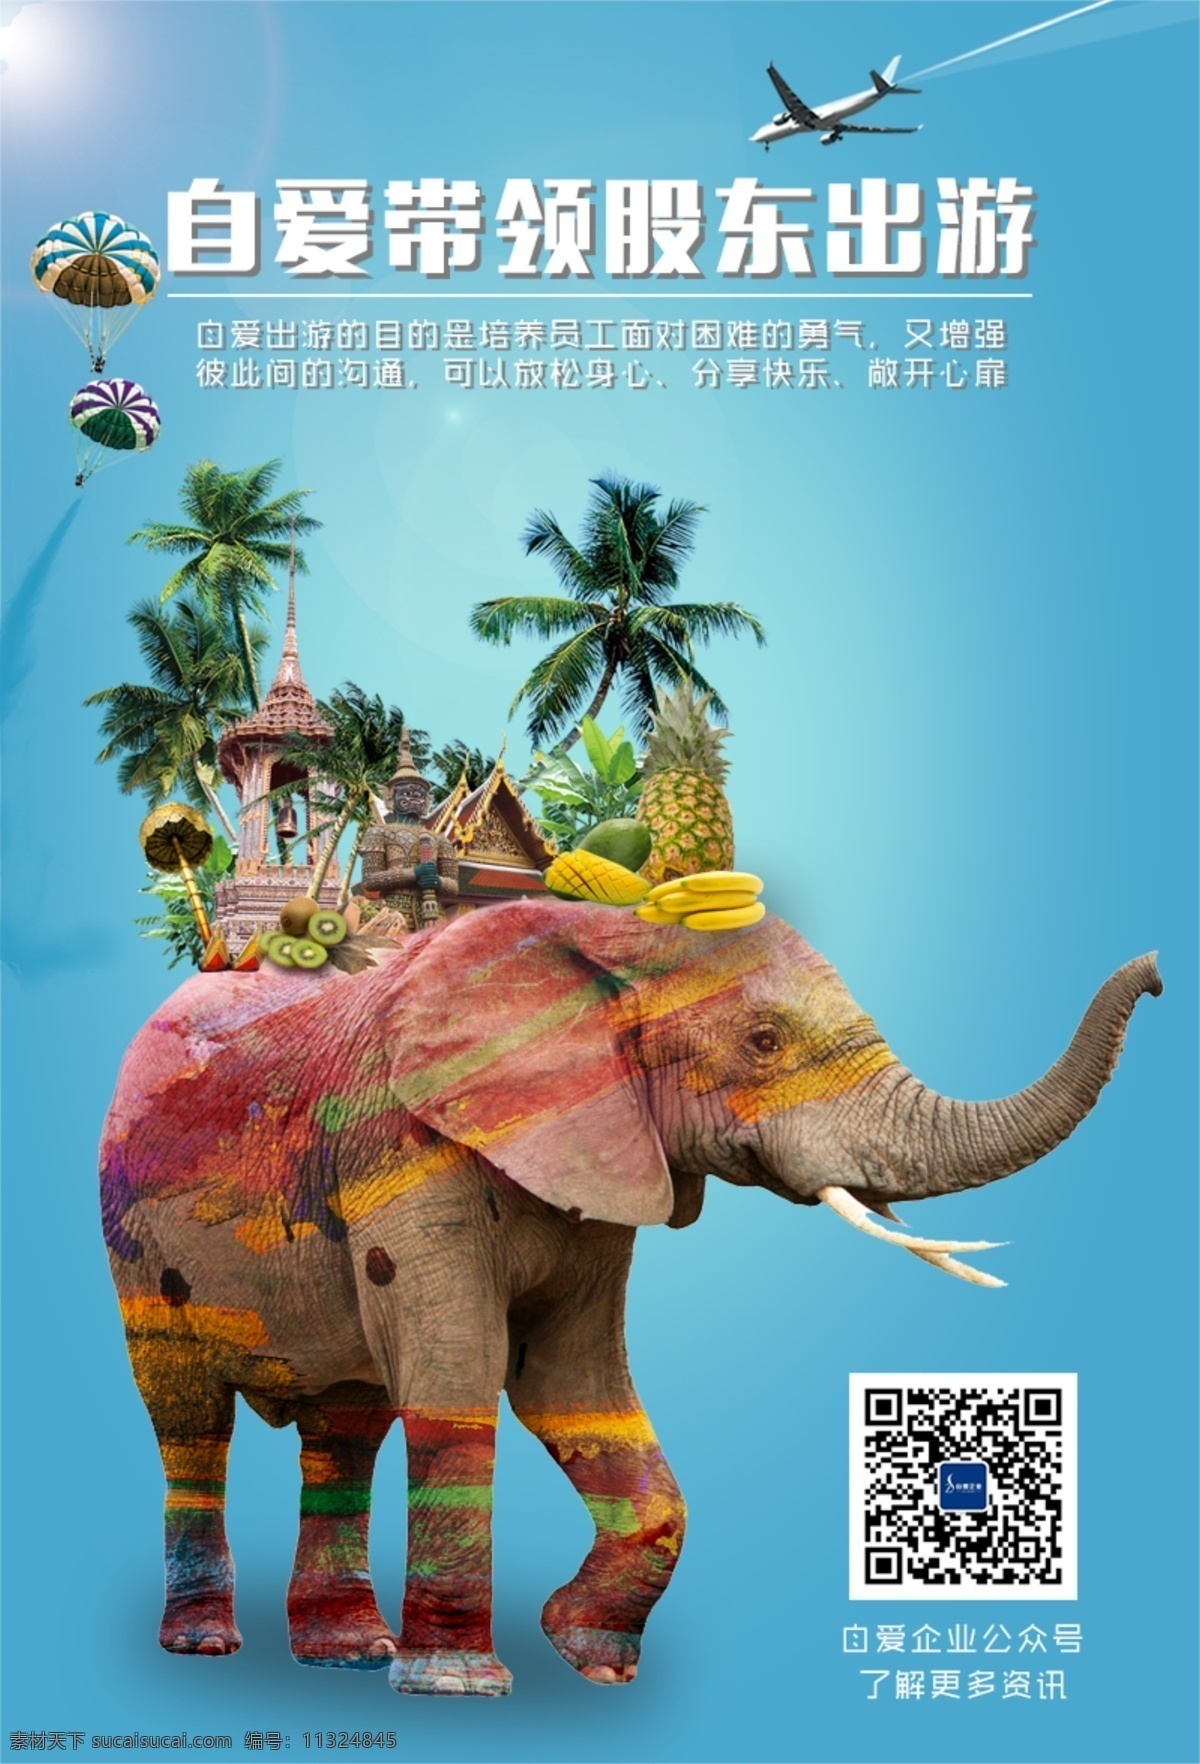 泰国大象海报 泰国 建筑 大象 水果 椰子树 飞机 气球 海报